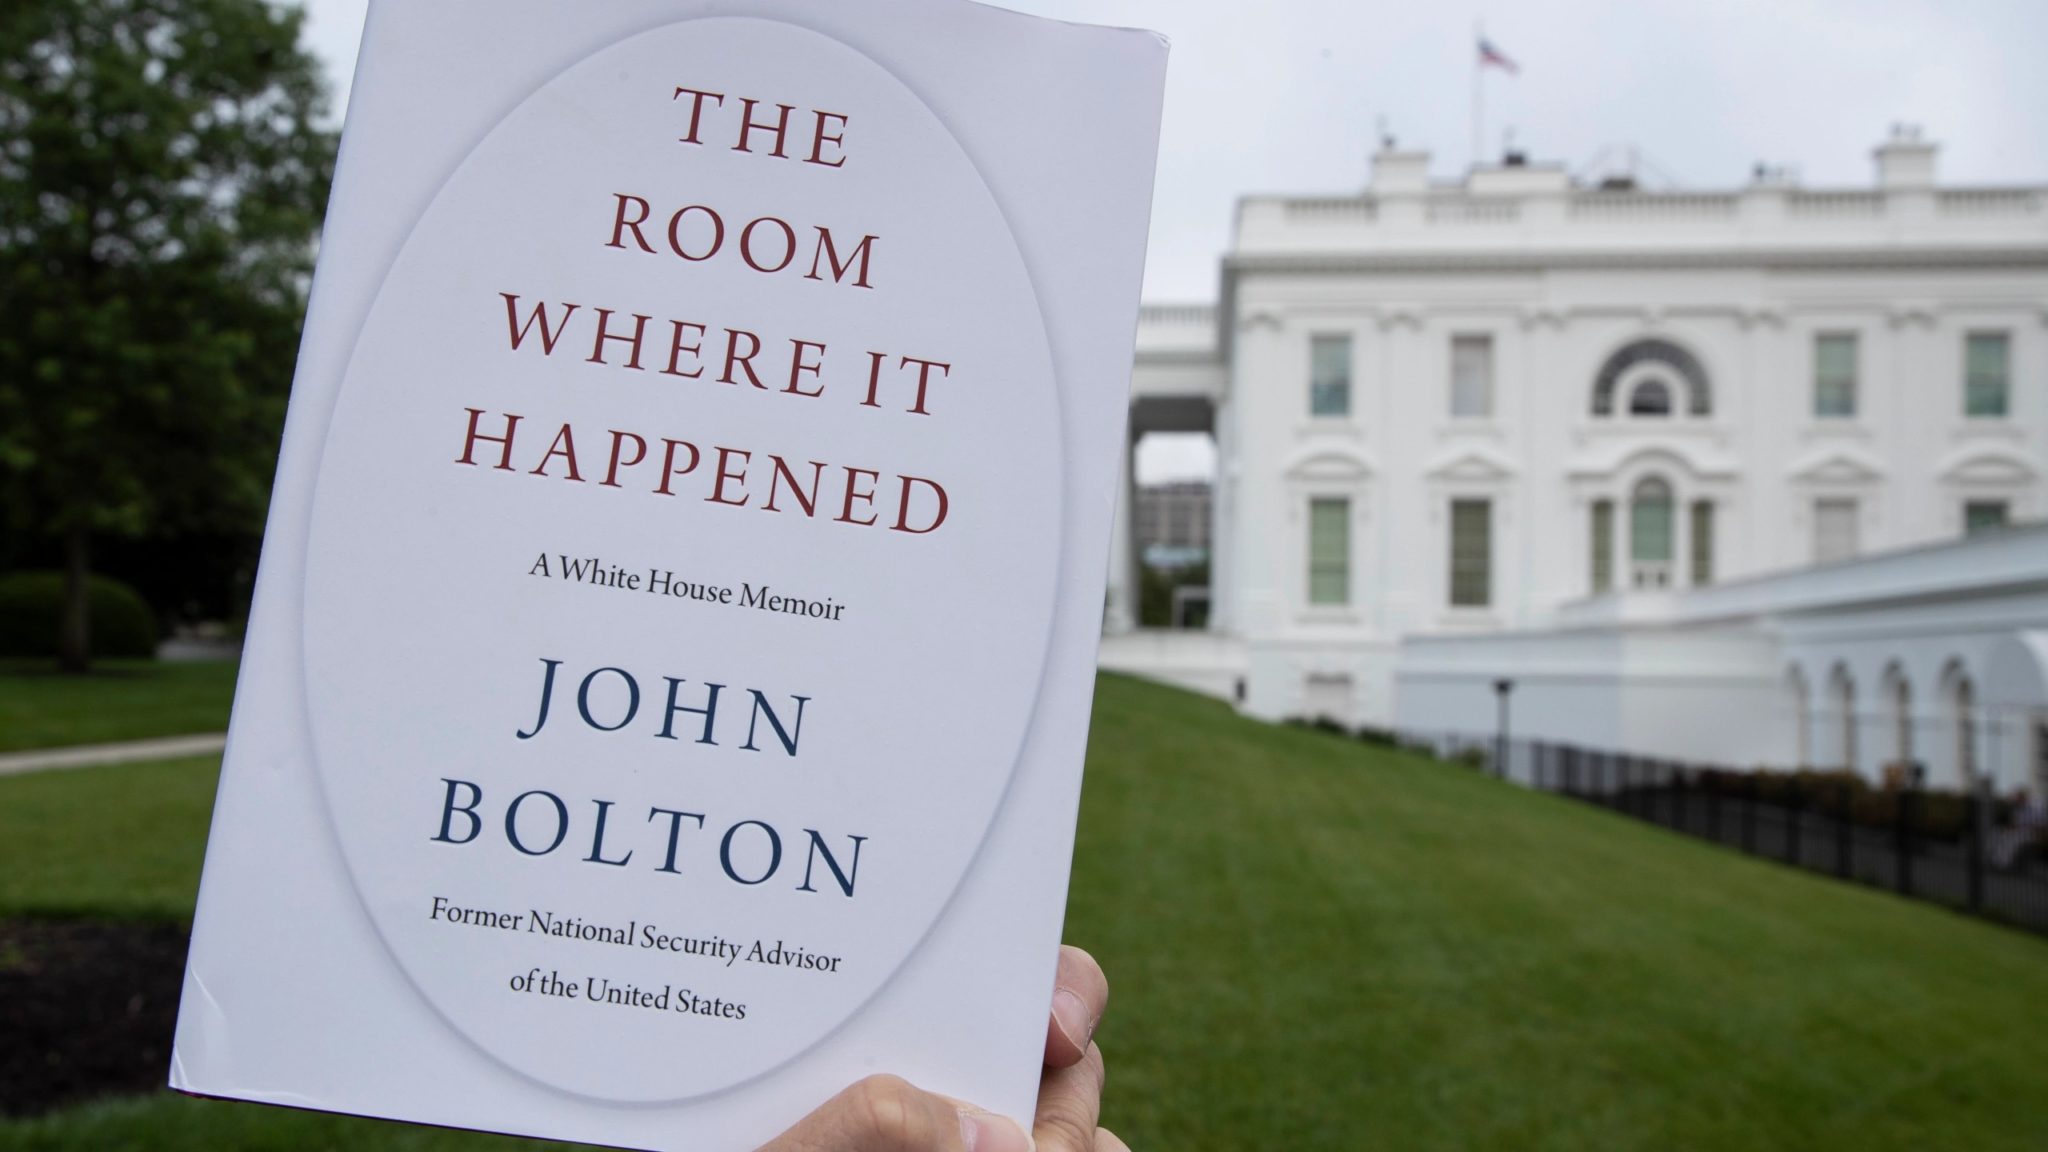  الغرفة – The Room Where it Happened - أكثر الكتب إثارة للجدل خلال عام 2020